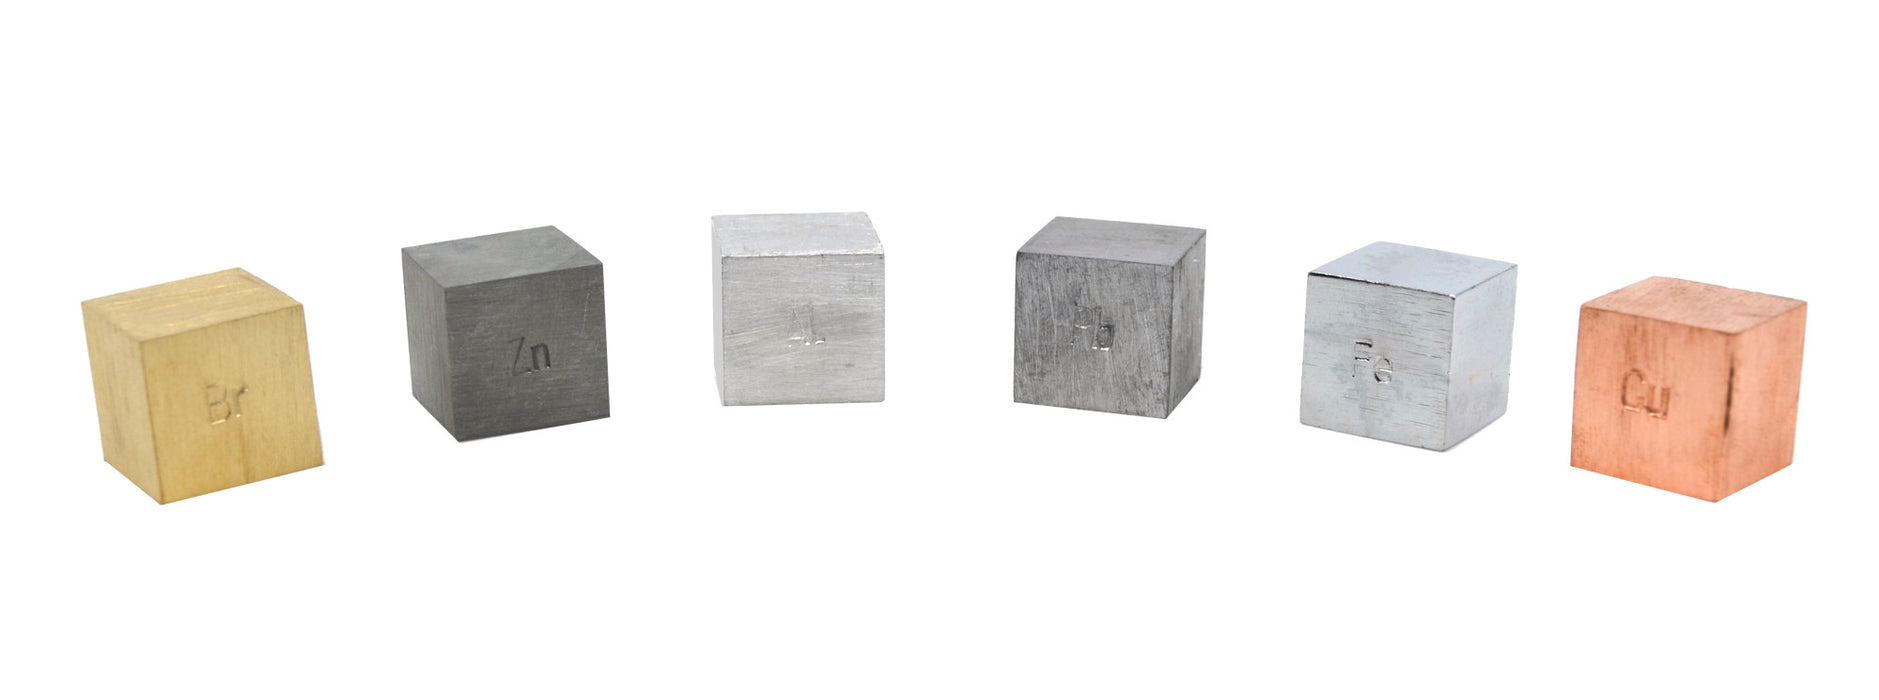 6 Piece Density Cubes Set - Includes Brass, Lead, Copper, Iron, Aluminum & Zinc - No Hooks